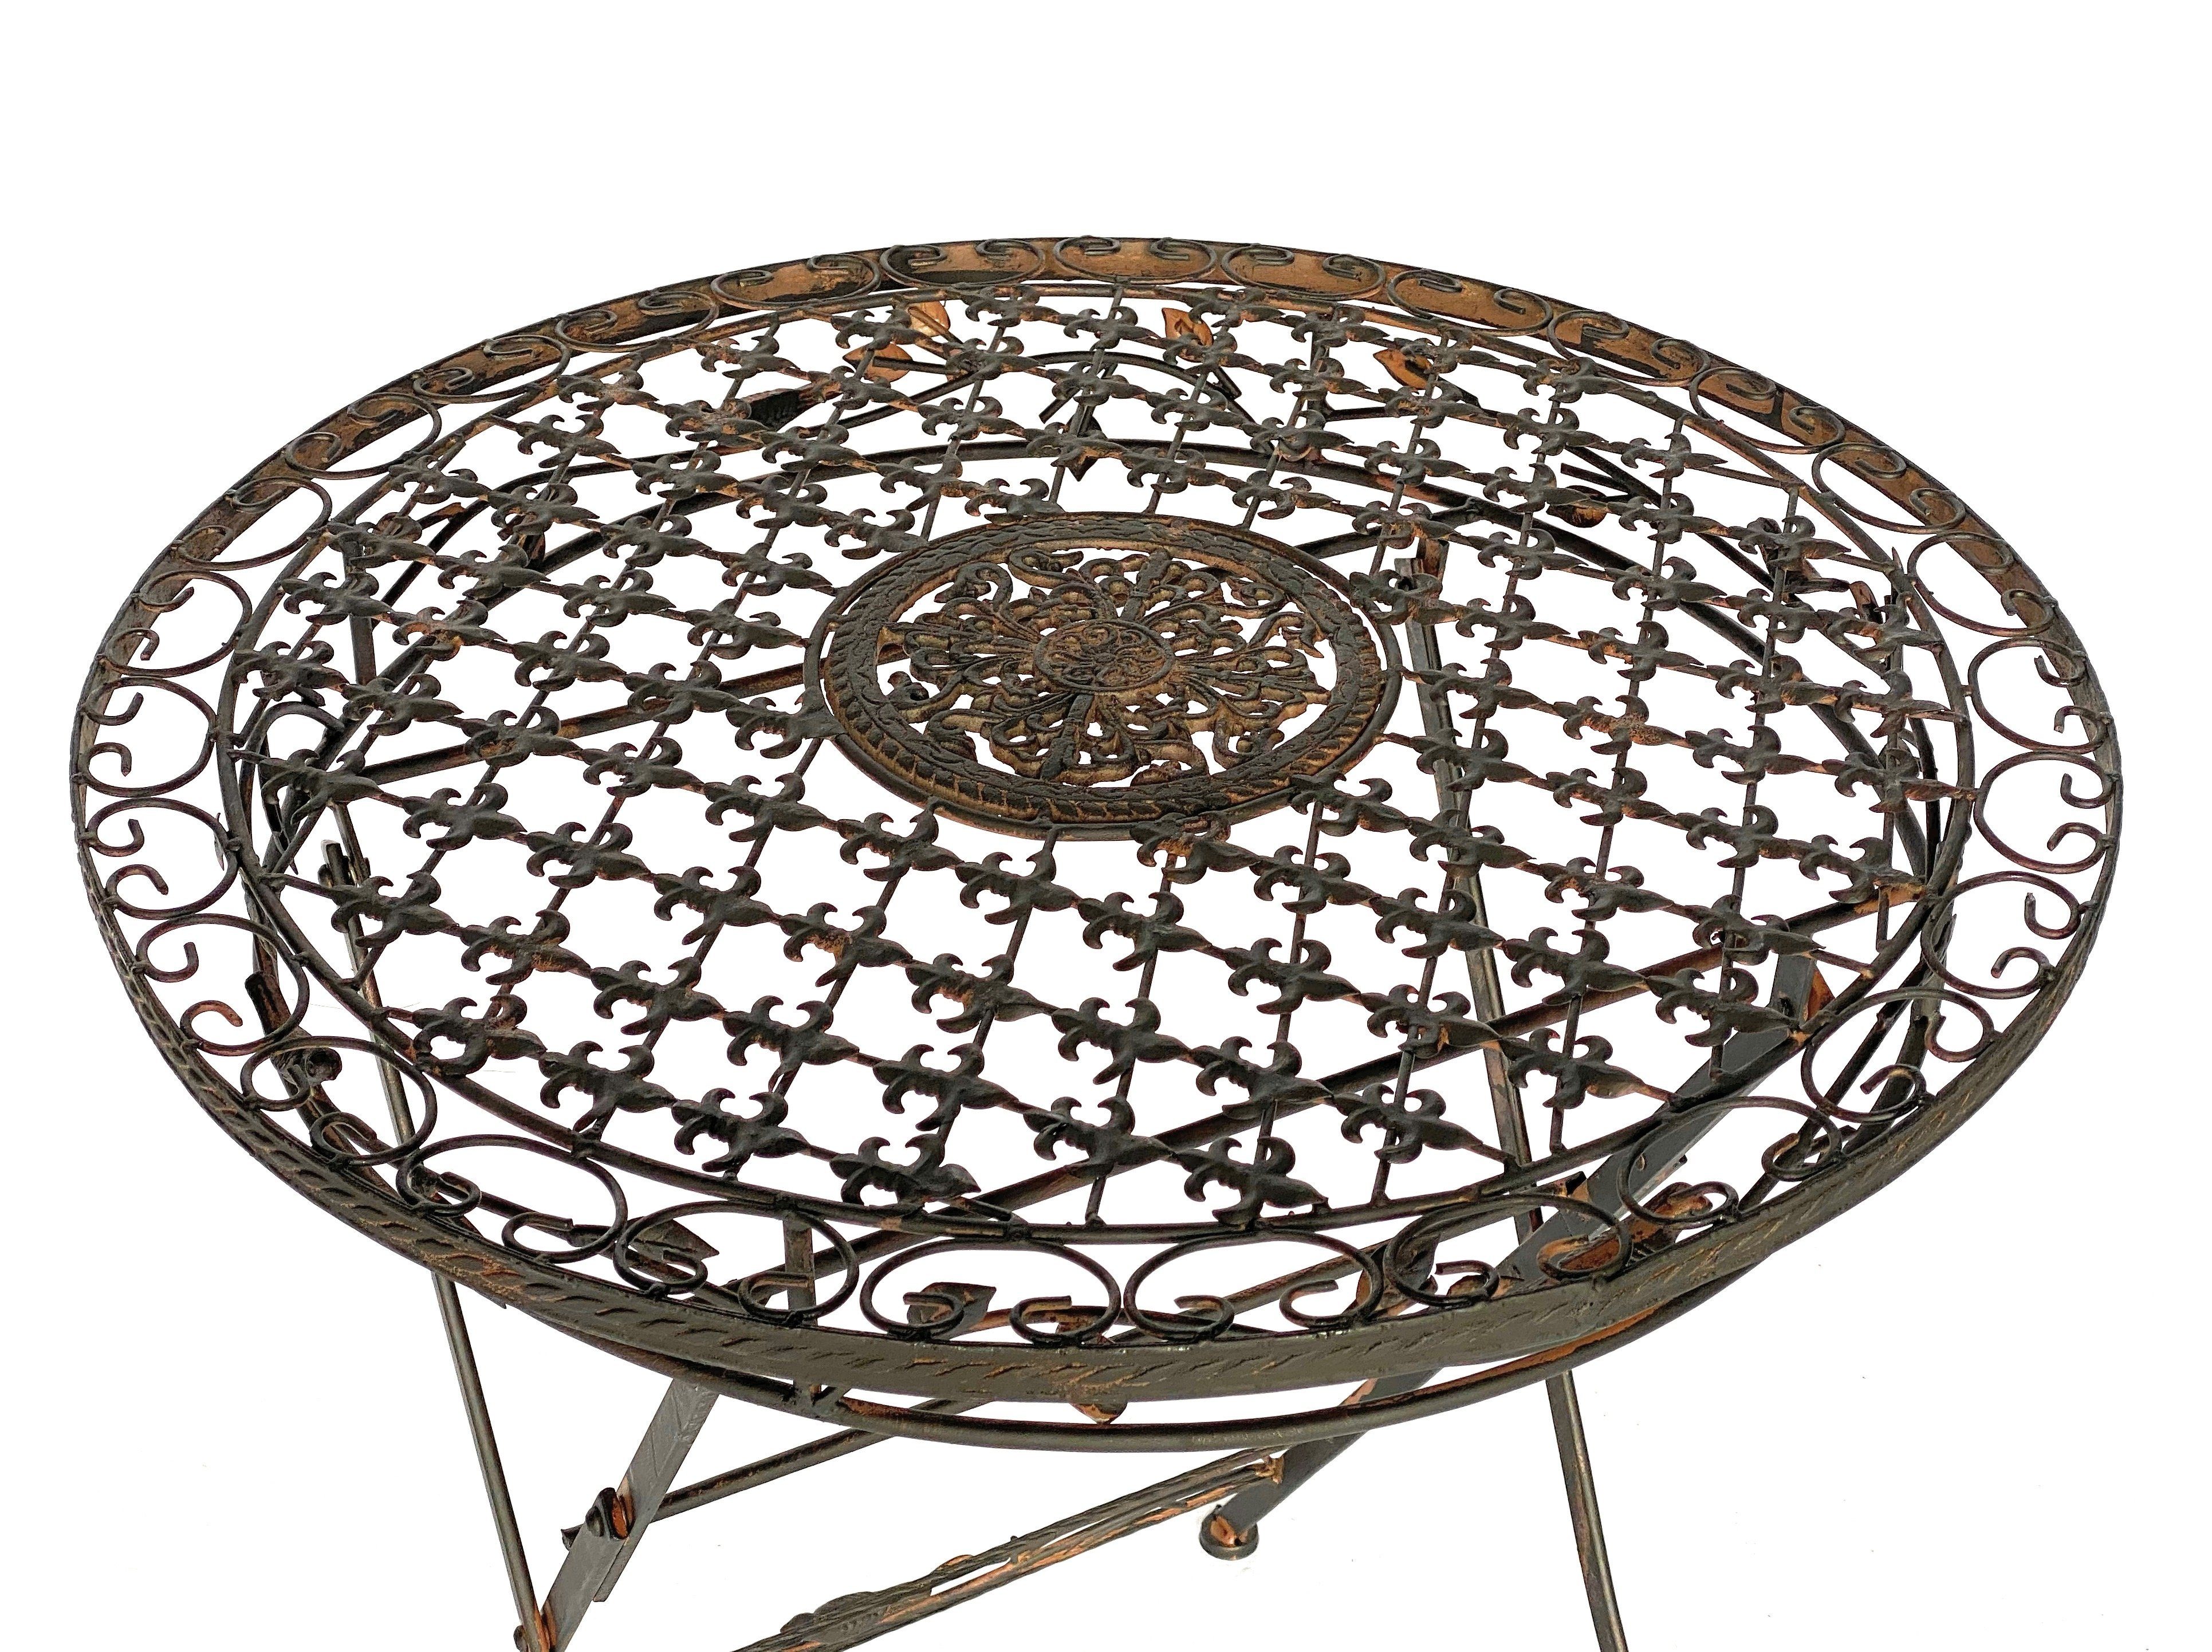 DanDiBo Gartentisch Tisch Bistrotisch Metall 1850 Antik Avis Rund Vintage Eisentisch Gartentisch Balkontisch